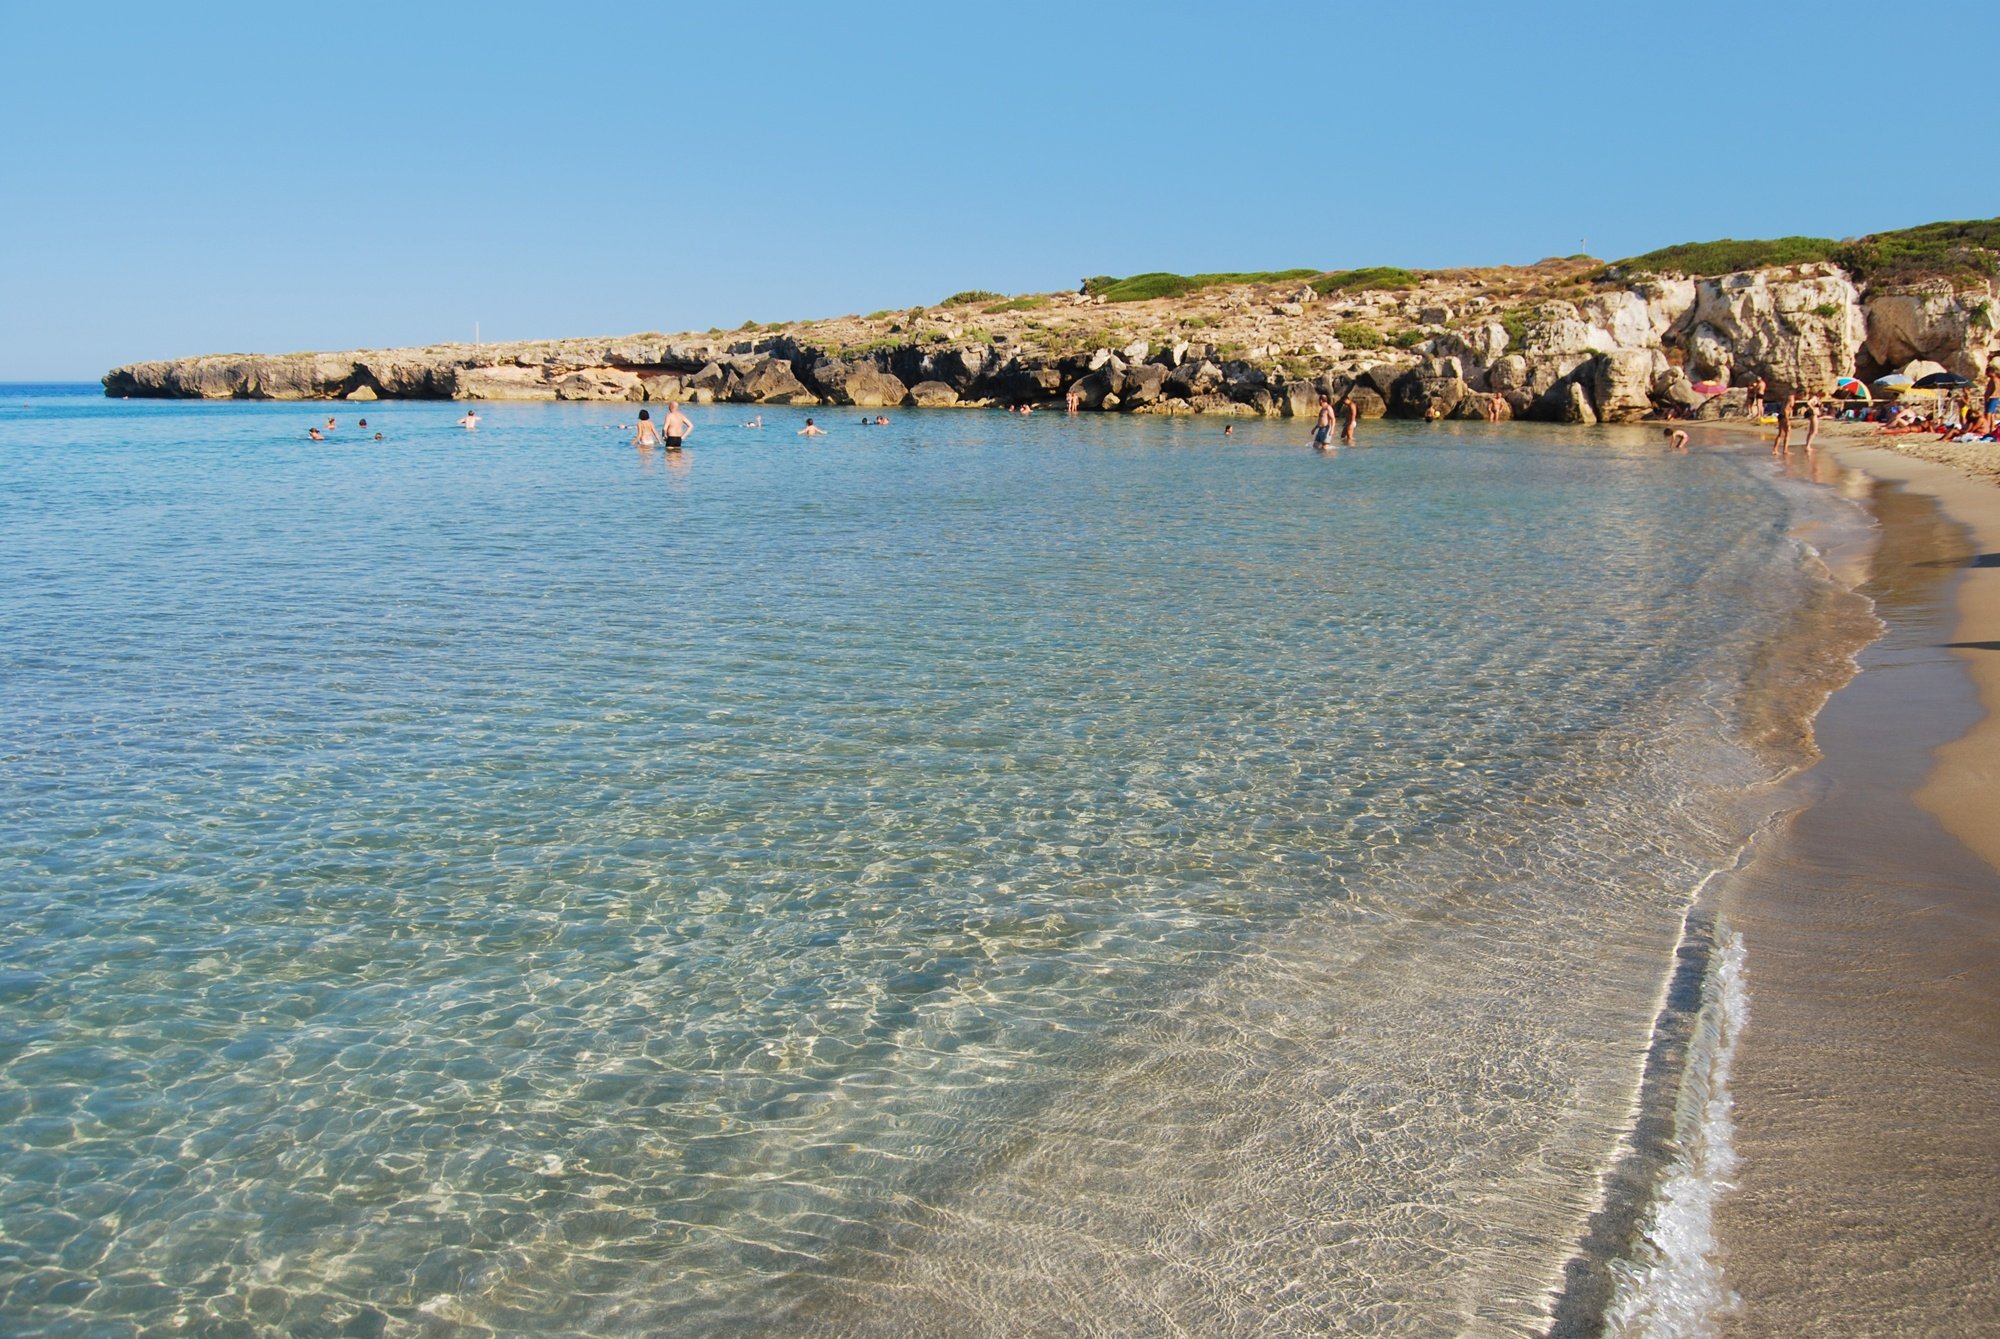 Case vacanze in Sicilia | La Spiaggia della Riserva Naturale di Vendicari.